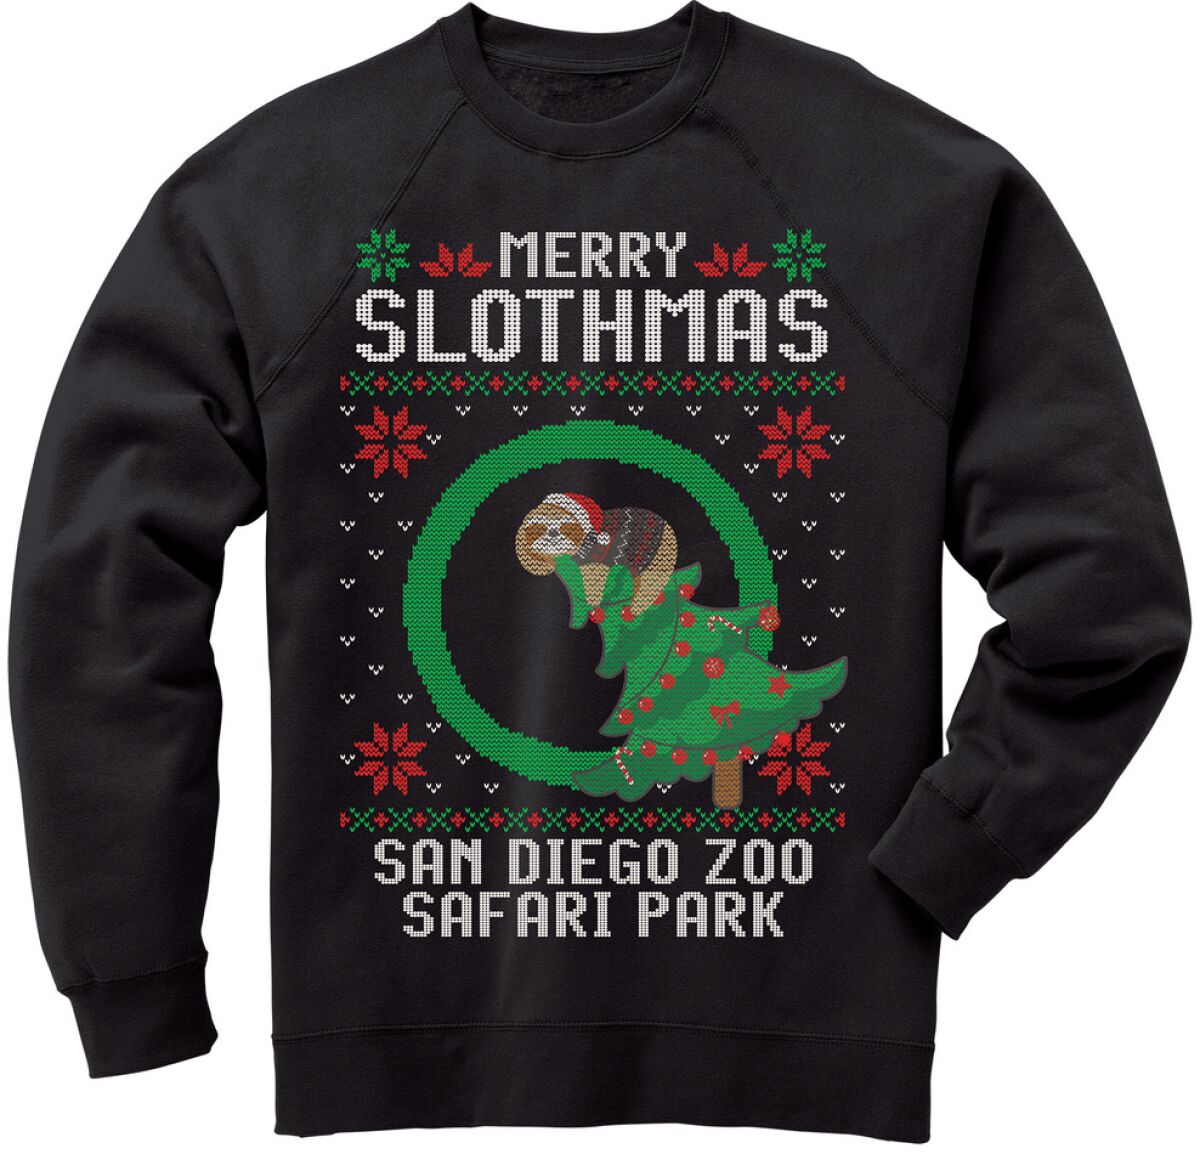 Merry Slothmas SD Zoo gift guide 2020